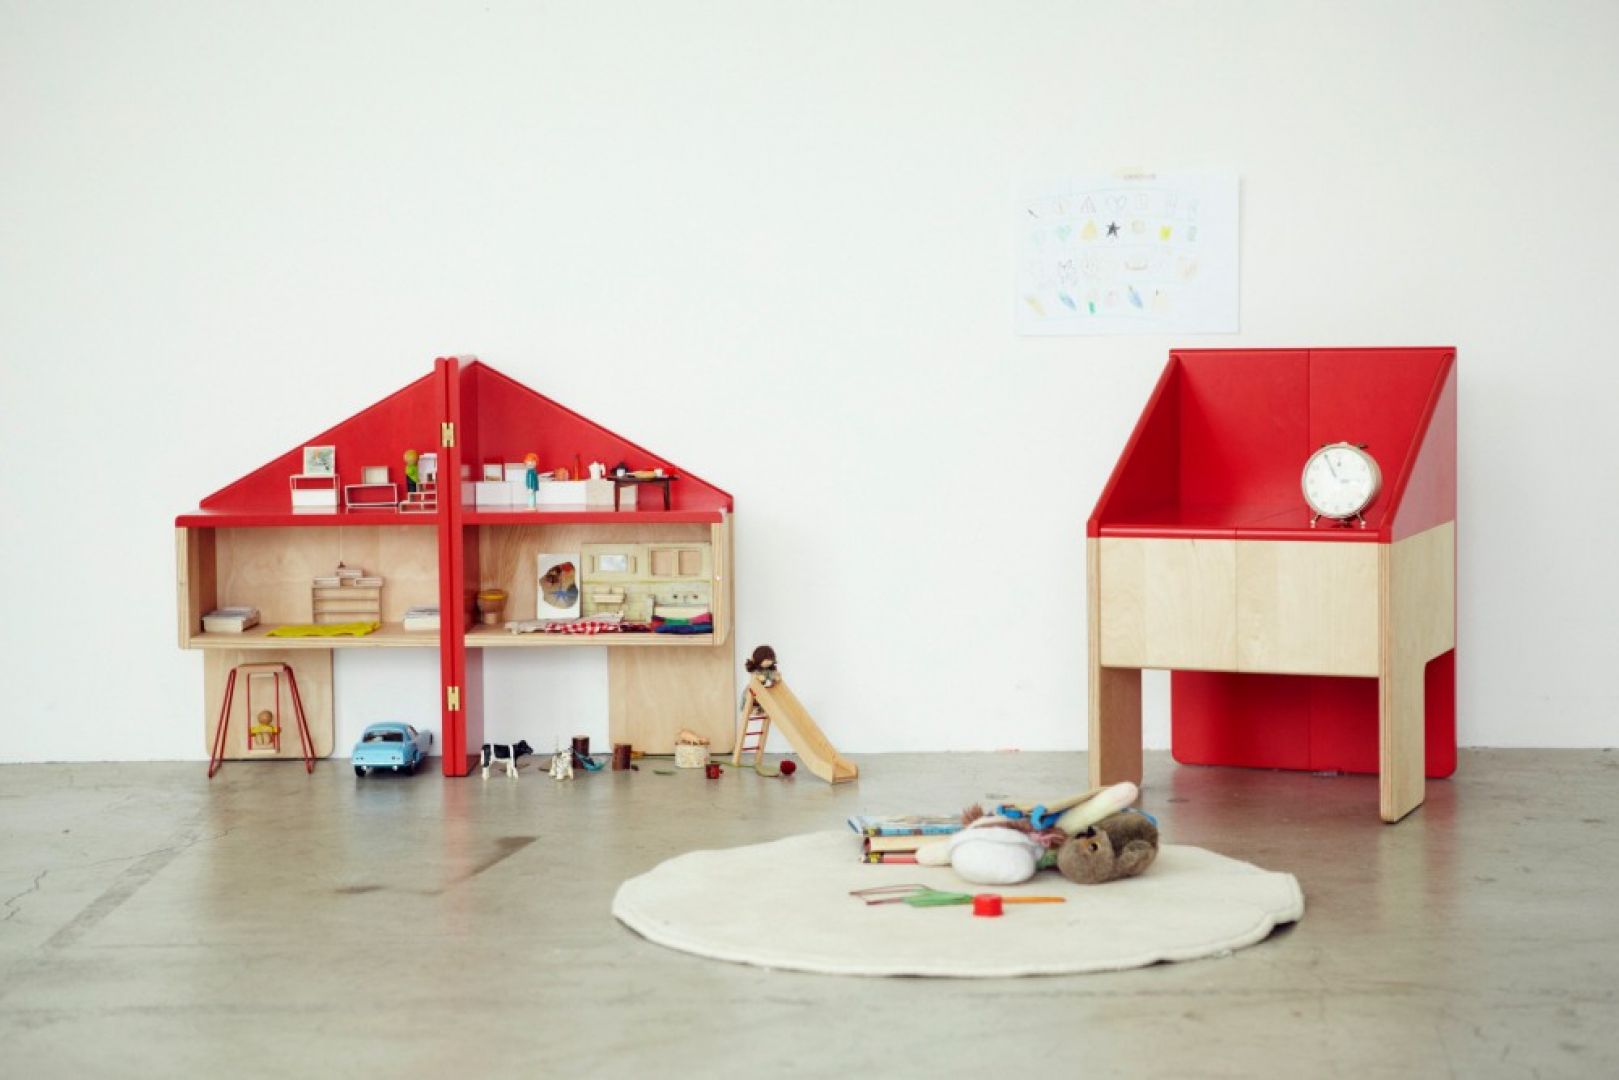 Japońskie studio Torafu Architects stworzyło domek dla lalek Ichiro mający dwojakie zastosowanie – po złożeniu może stać się też wygodnym krzesełkiem dla dziecka. Fot. www.hellowonderful.co